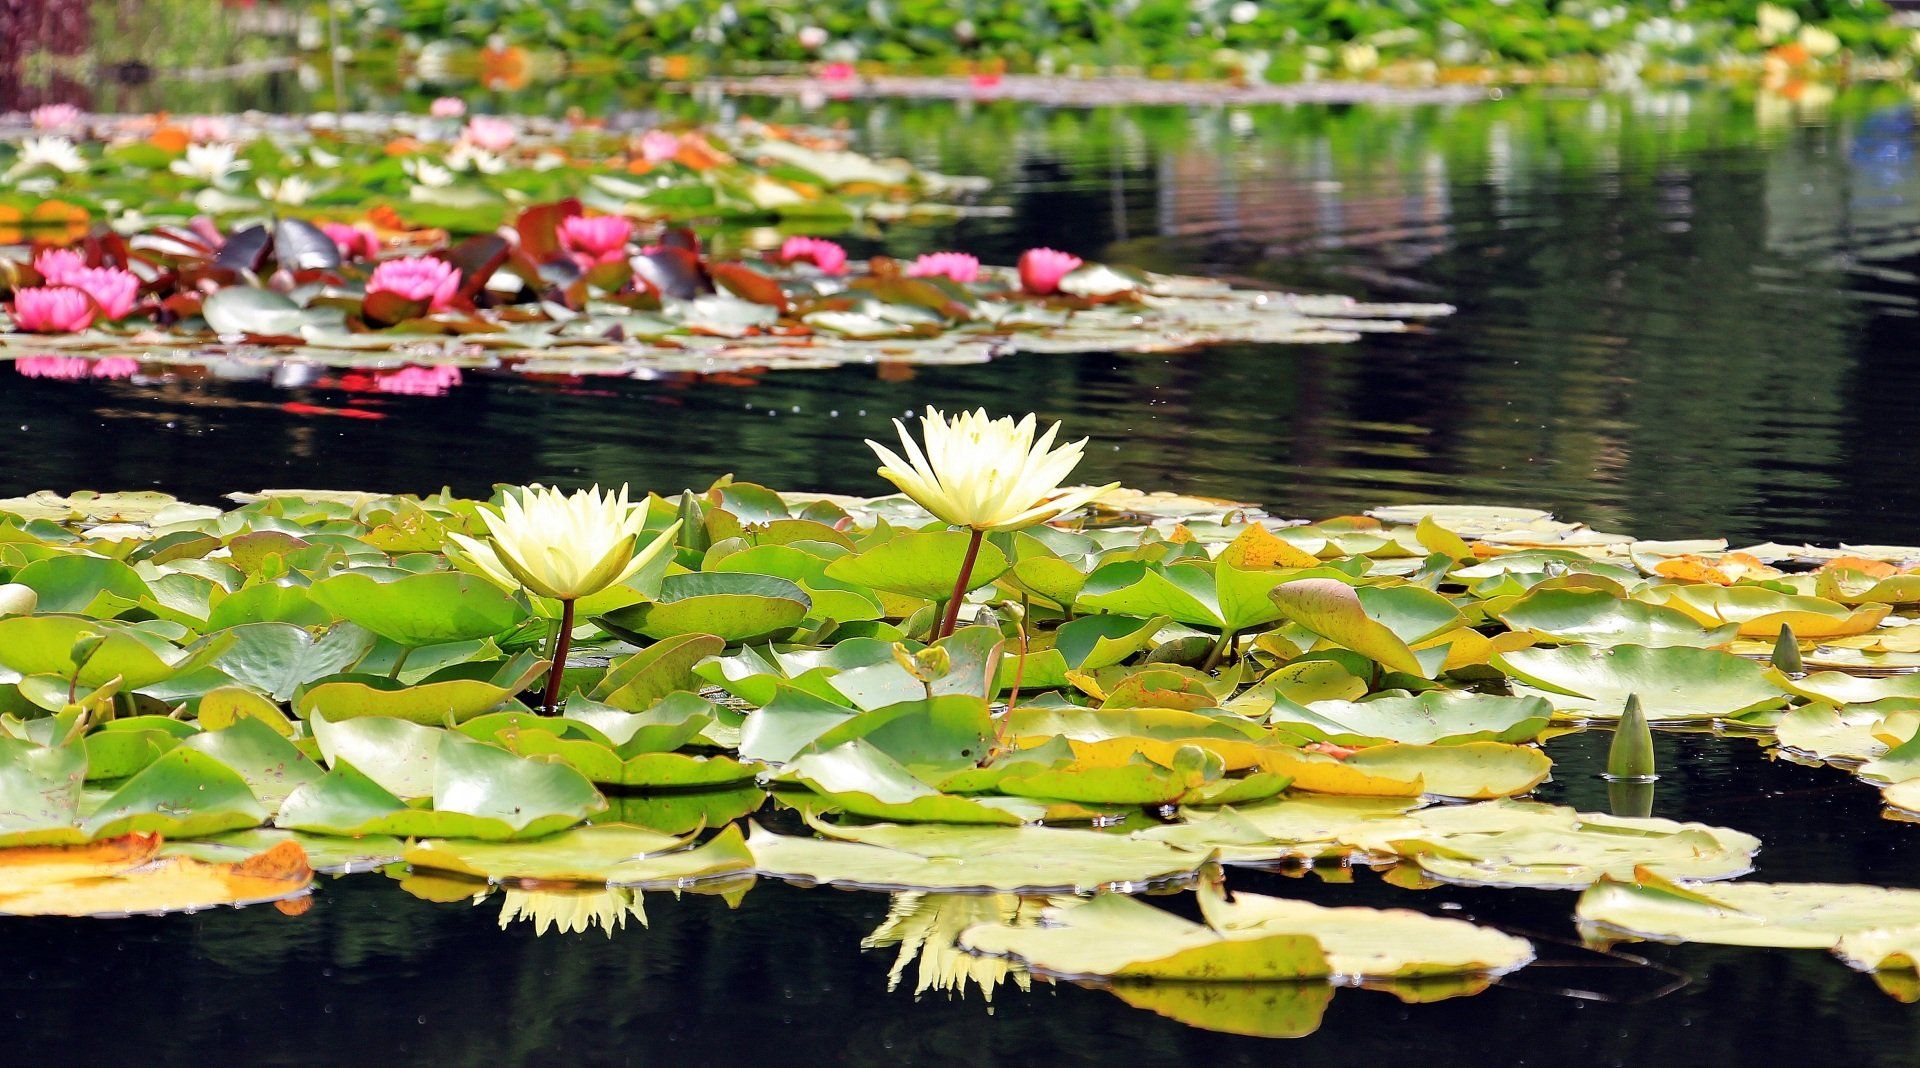 lotuses on a pond